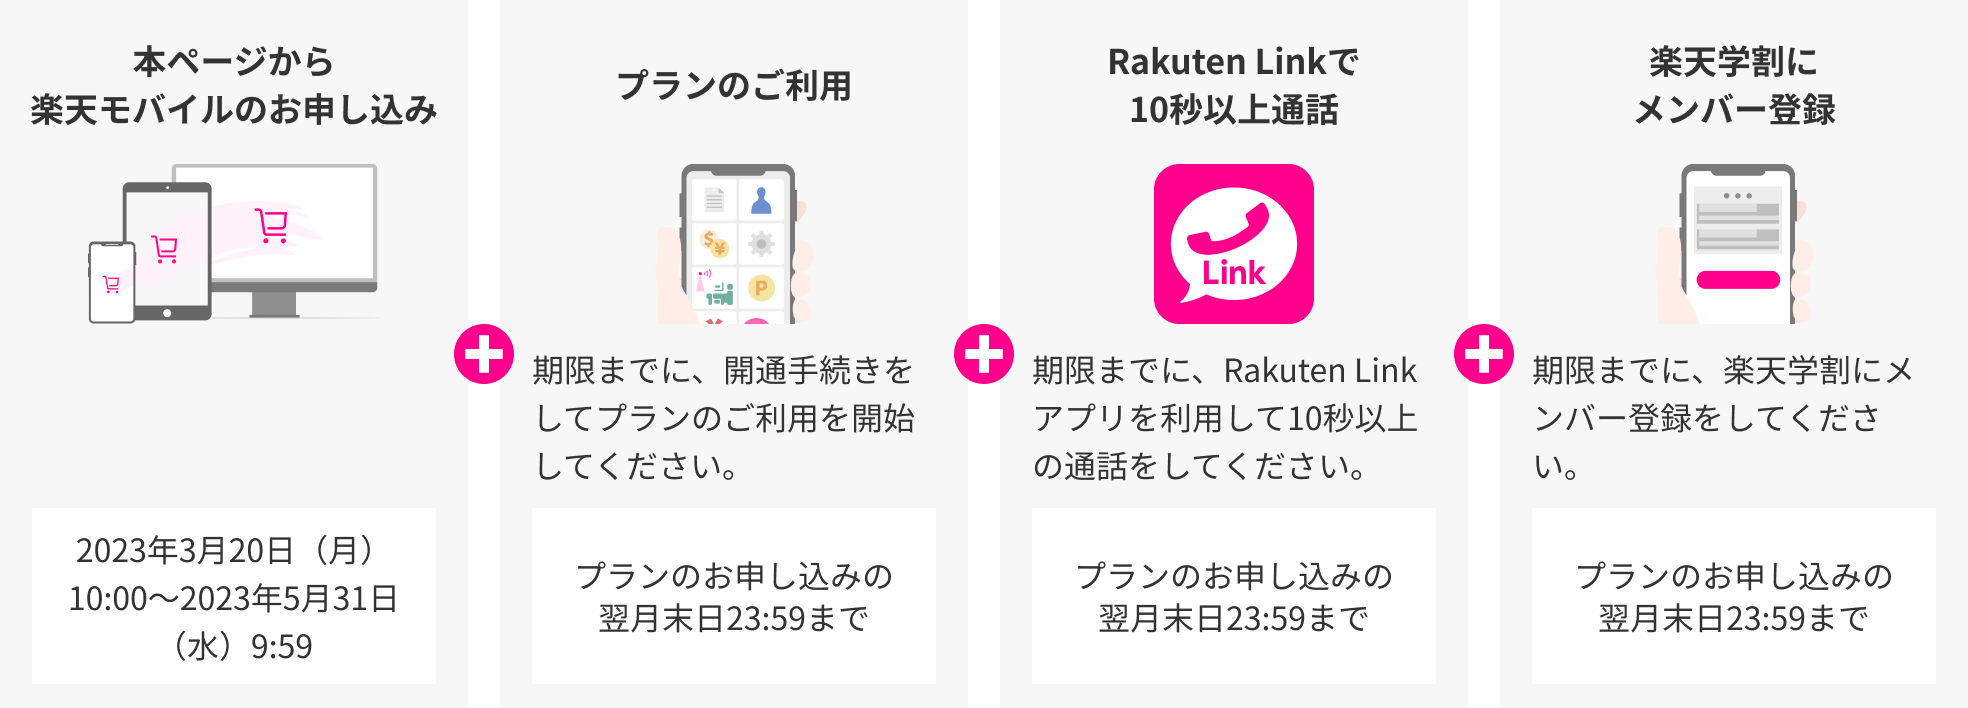 本ページから楽天モバイルのお申し込み 2023年3月20日（月）10:00～2023年5月31日（水）9:59 ＋ プランのご利用 期限までに、開通手続きをしてプランのご利用を開始してください。 プランのお申し込みの翌月末日23:59まで ＋ Rakuten Linkで10秒以上通話 期限までに、Rakuten Linkアプリを利用して10秒以上の通話をしてください。 プランのお申し込みの翌月末日23:59まで ＋ 楽天学割にメンバー登録 期限までに、楽天学割にメンバー登録をしてください。 プランのお申し込みの翌月末日23:59まで